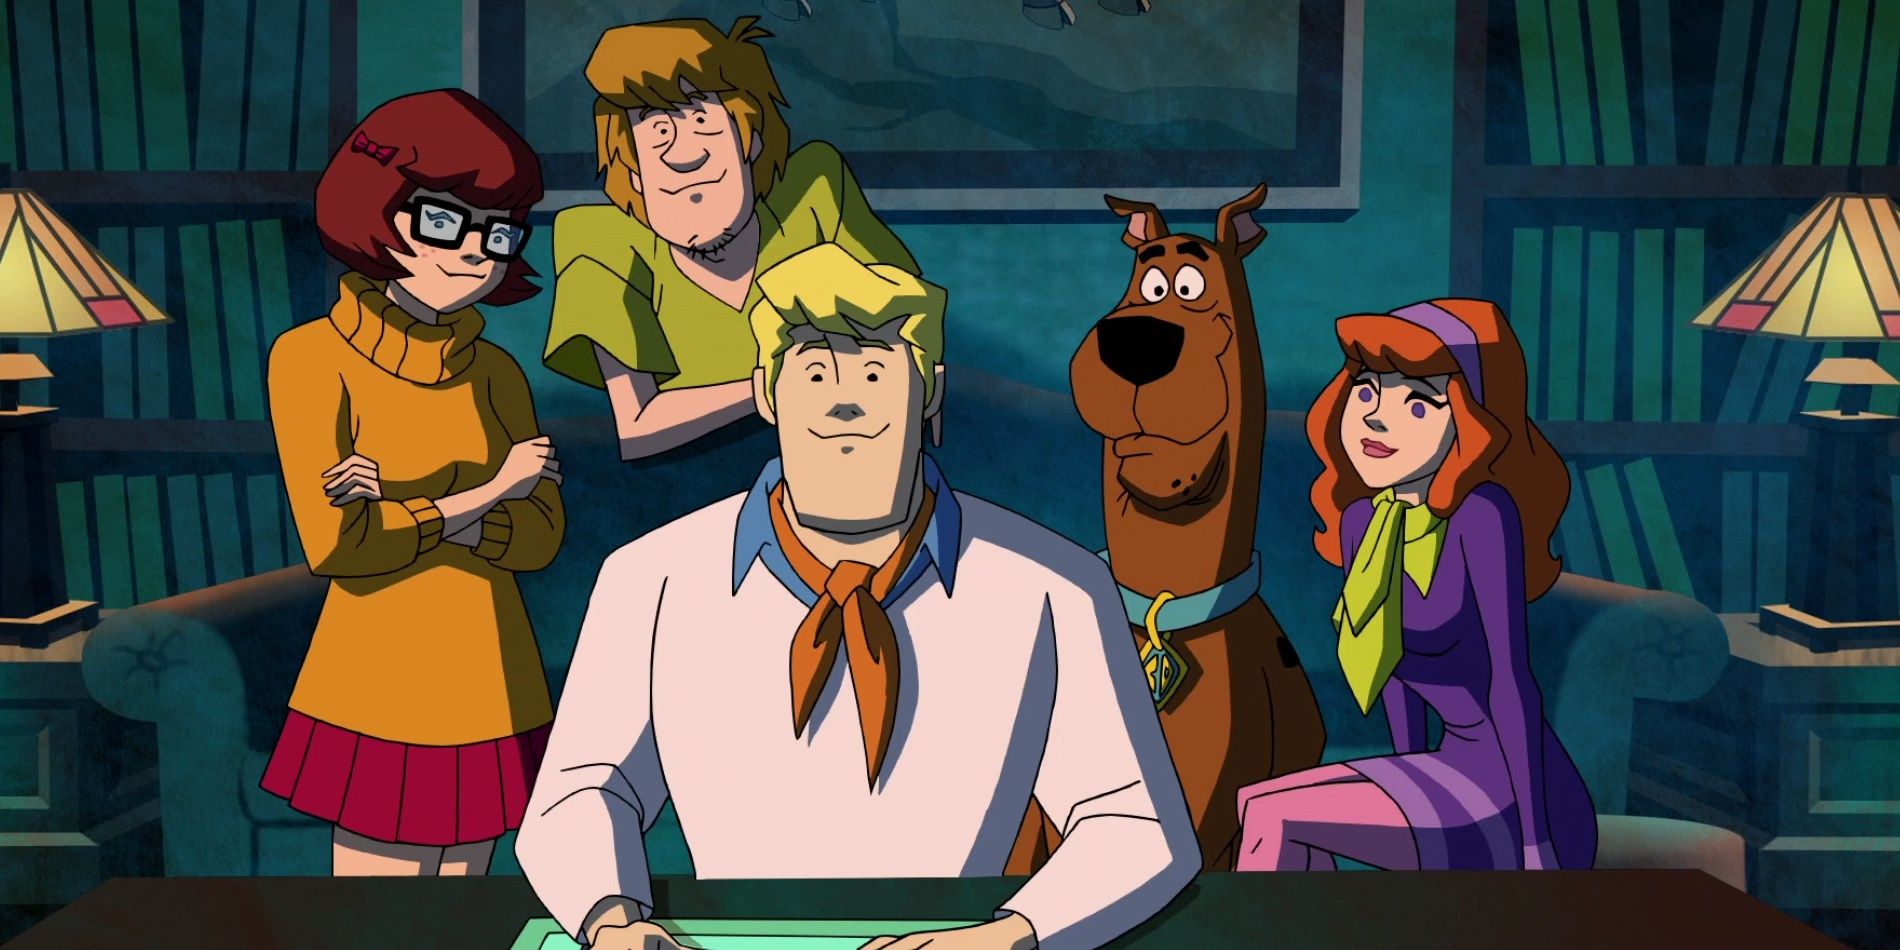 A gangue do Scooby fica em uma biblioteca na Scooby-Doo Mystery Incorporated.